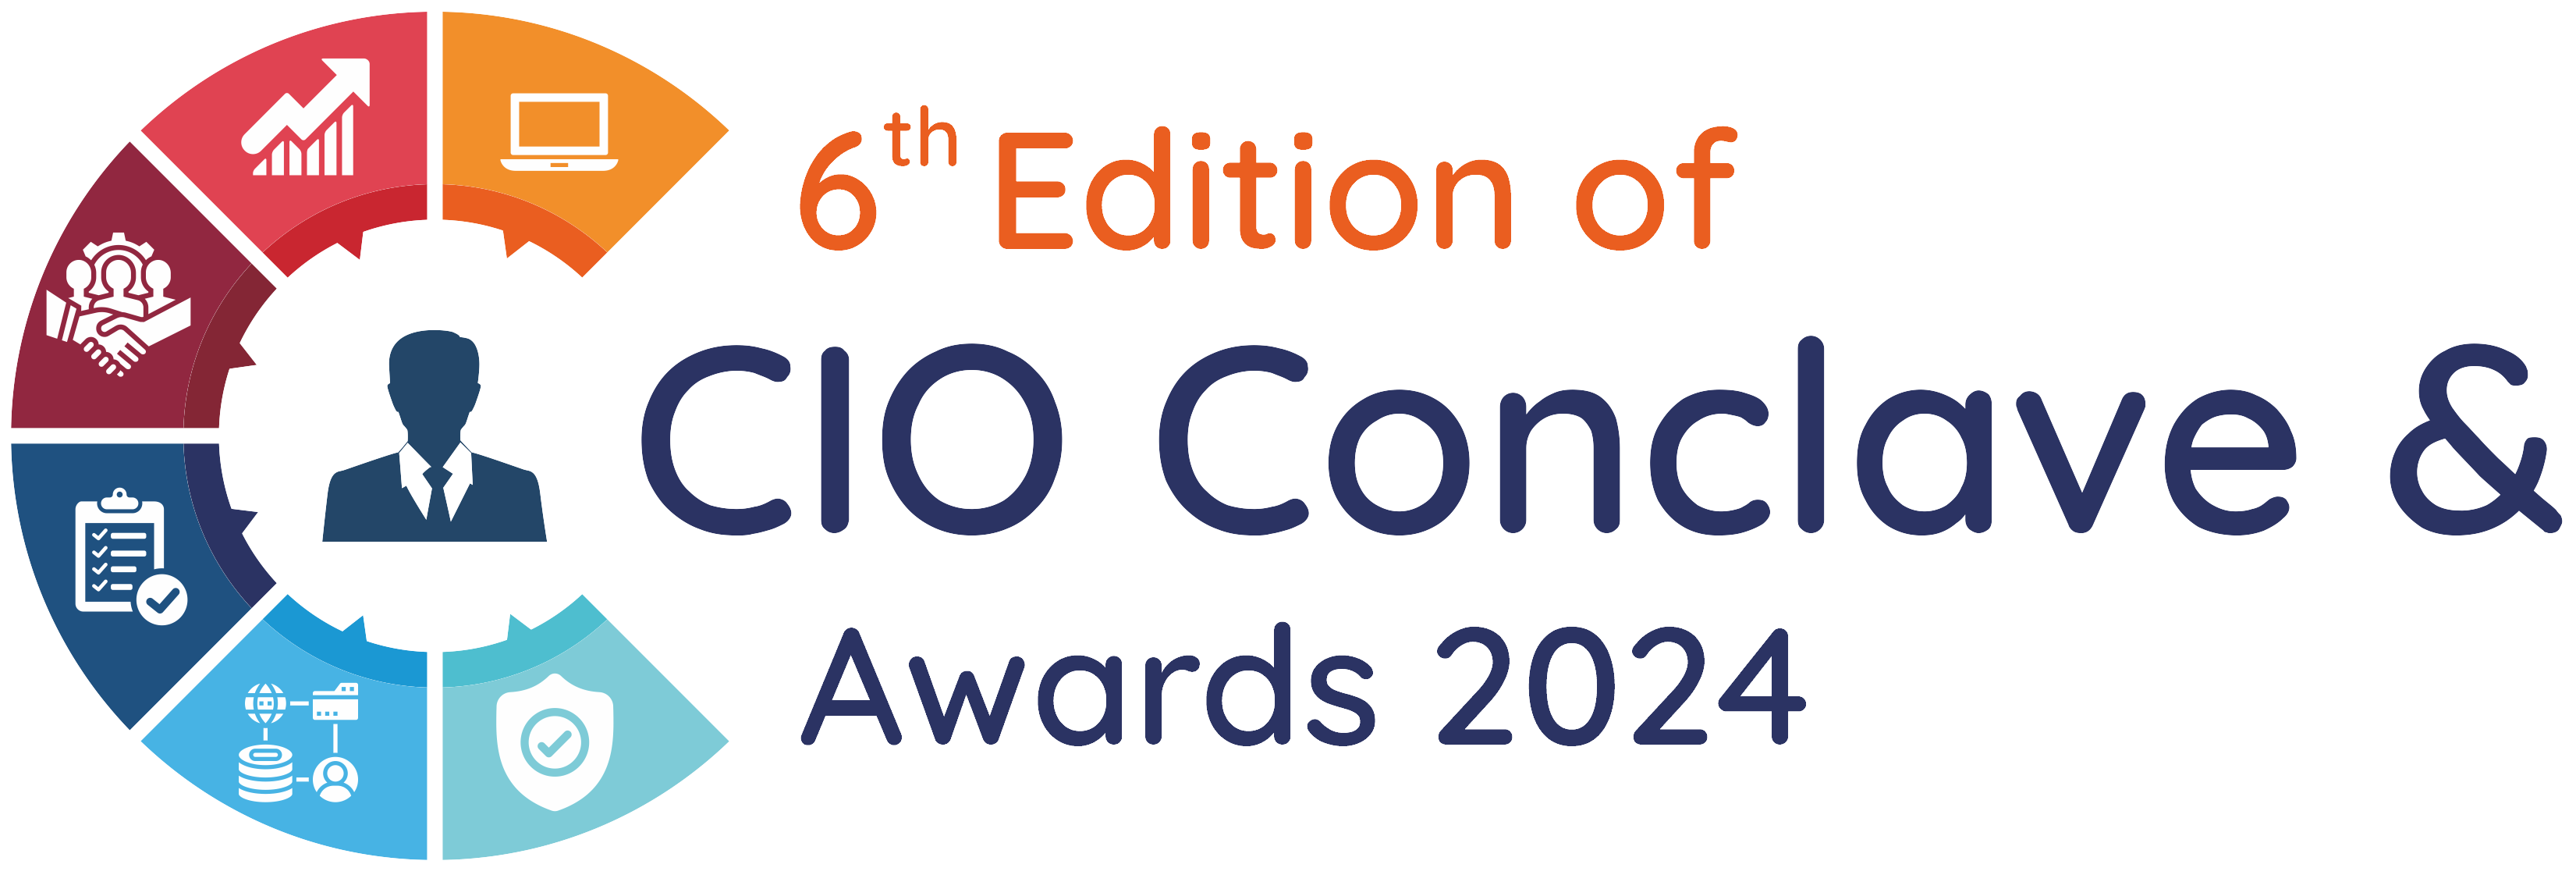 6th Edition CIO Conclave Summit & Awards 2024